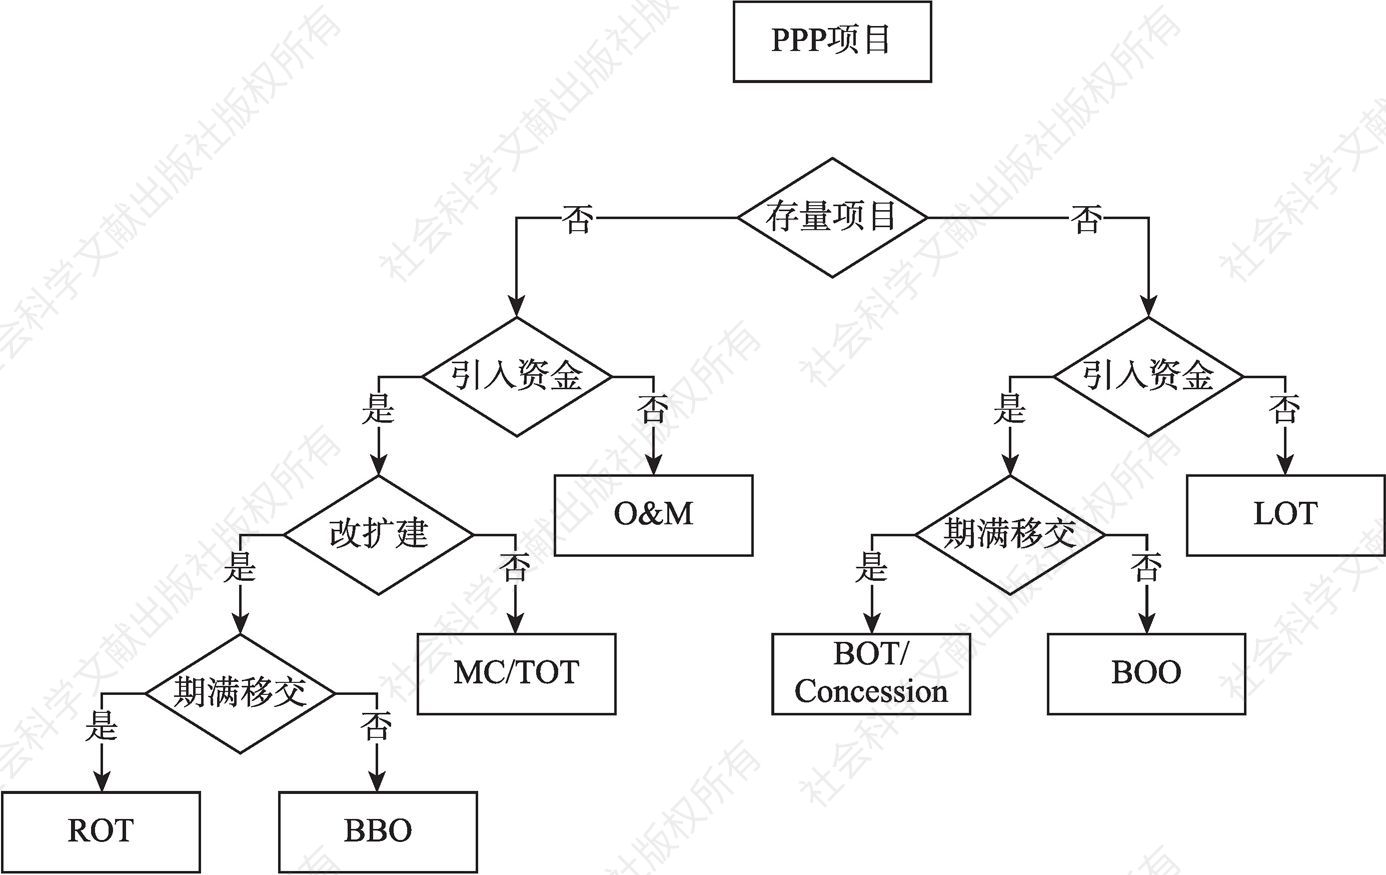 图10-1 公路的PPP模式选择流程